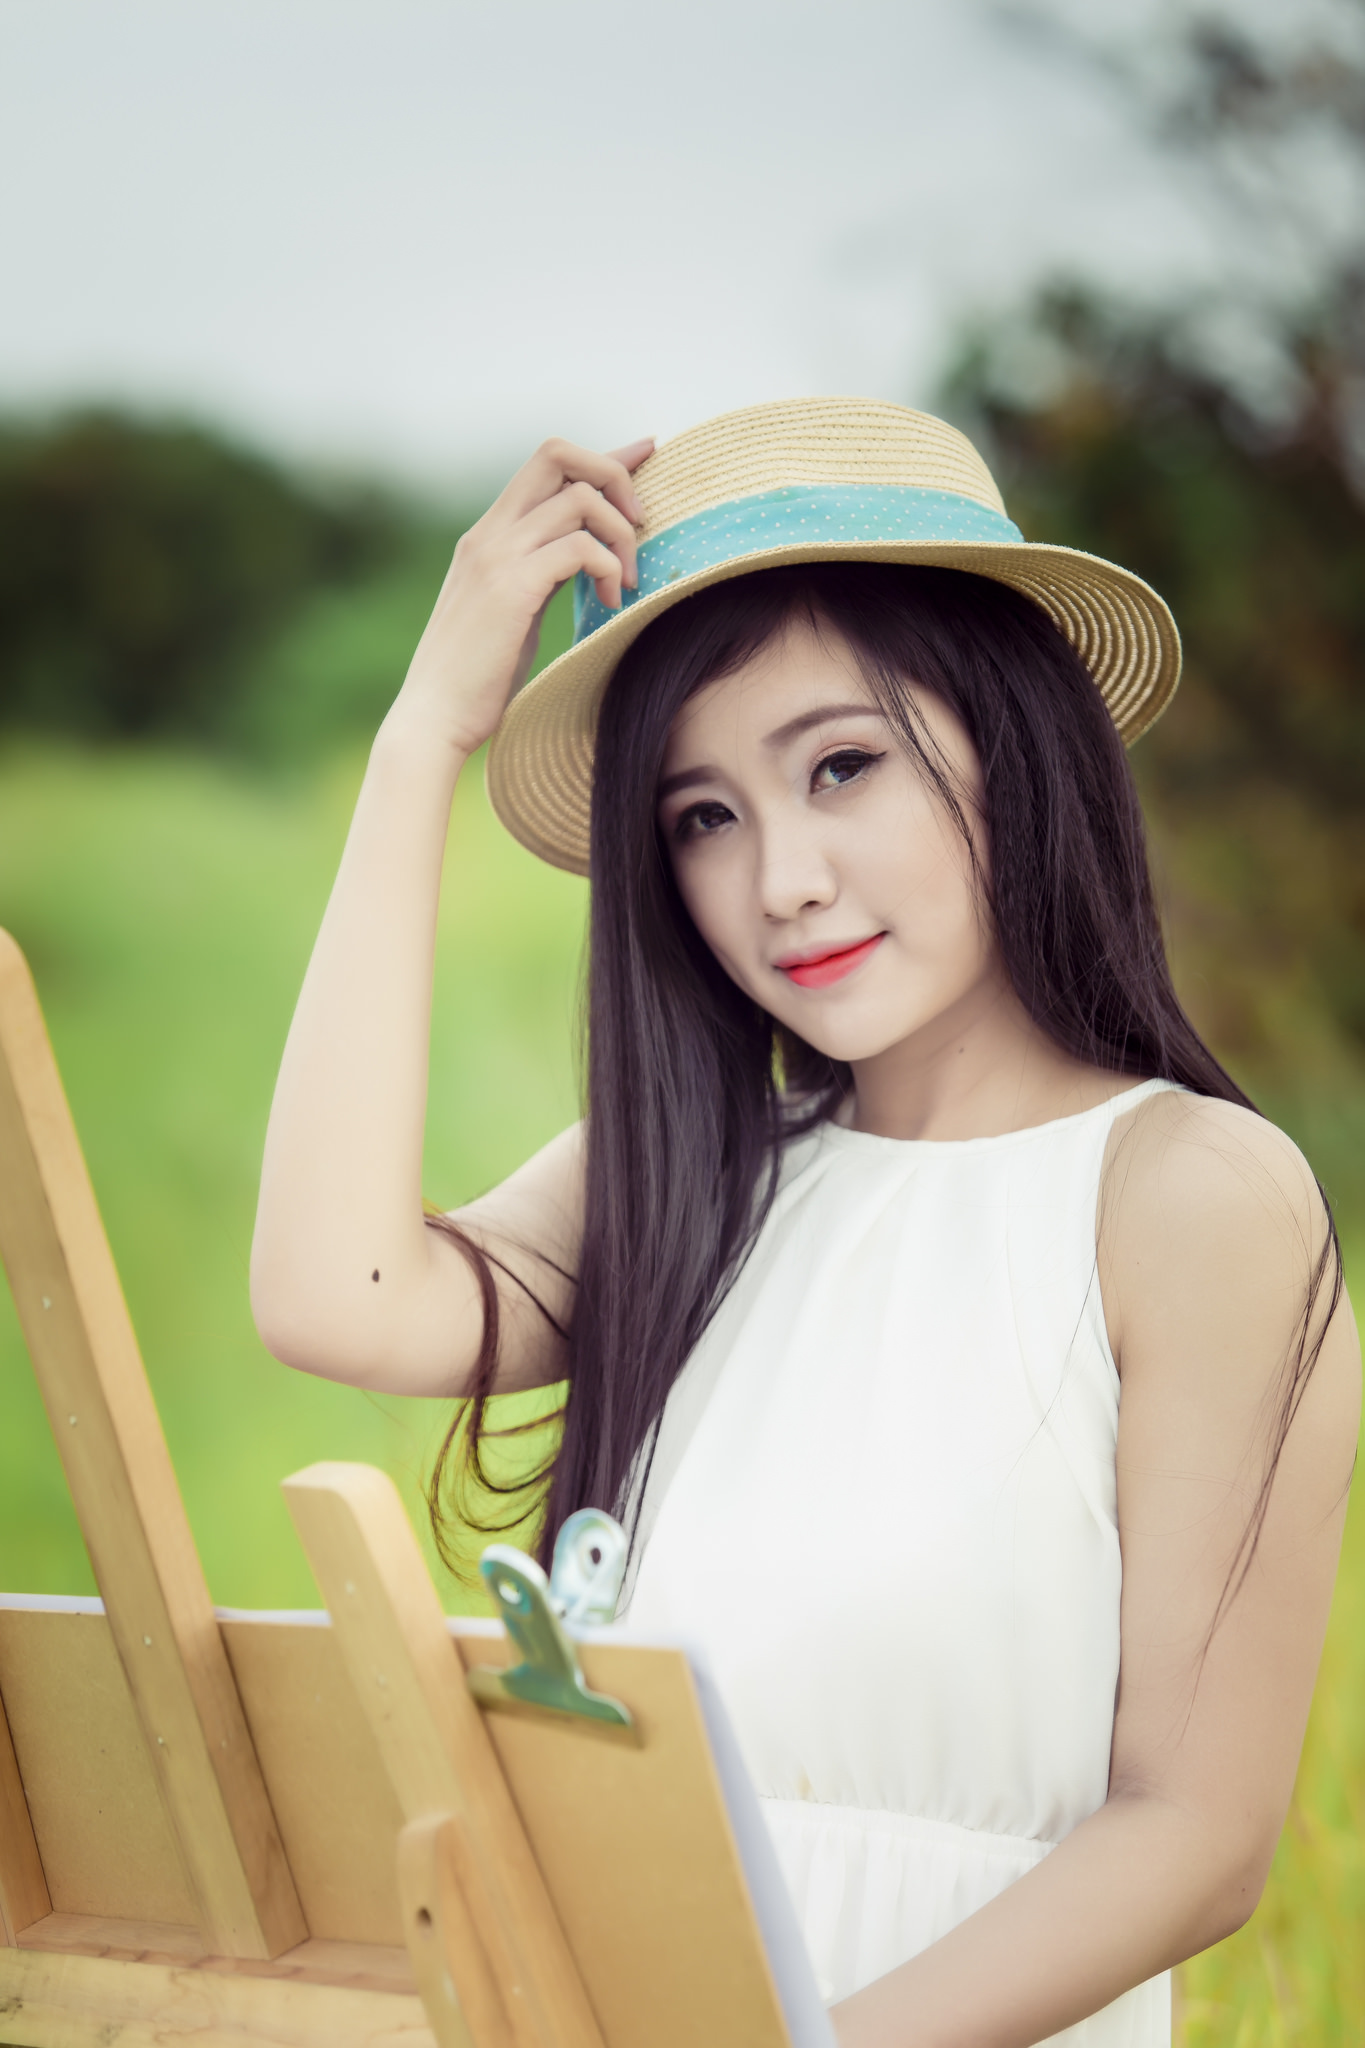 Beautiful girl in a meadow photo